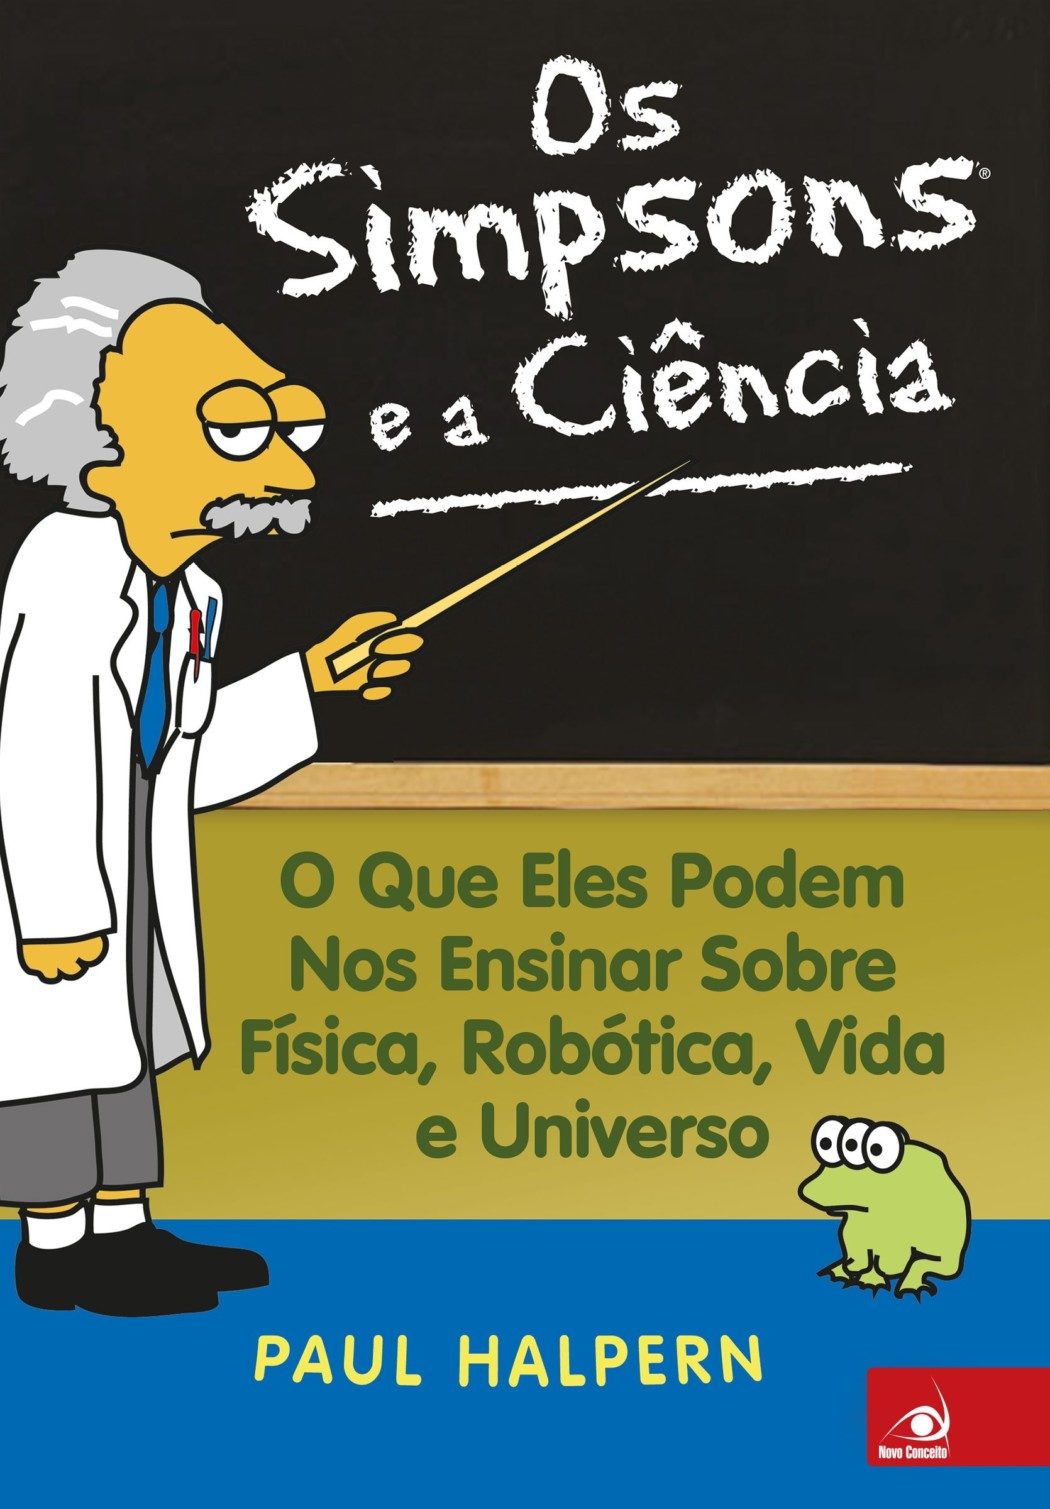 Livro "Os Simpsons e a Ciência" aborda de maneira interessante vários elementos científicos do seriado